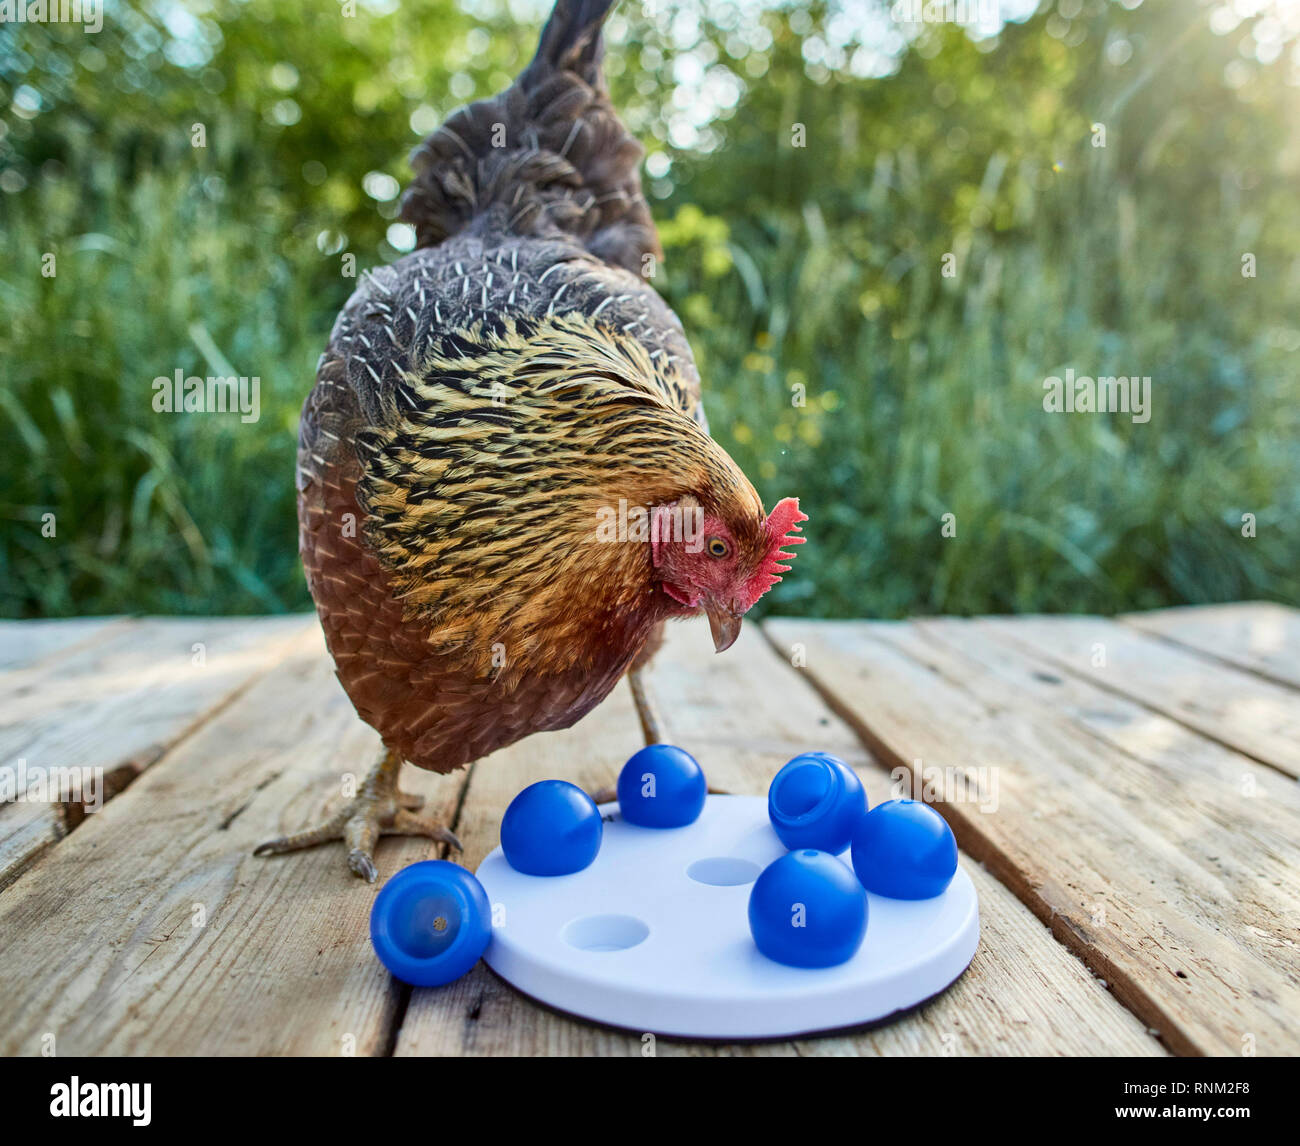 Welsummer Hühner. Henne in einem Garten, auf der Suche nach versteckten Leckerbissen unter im Toy, das Essen los, wenn behandelt. Deutschland Stockfoto